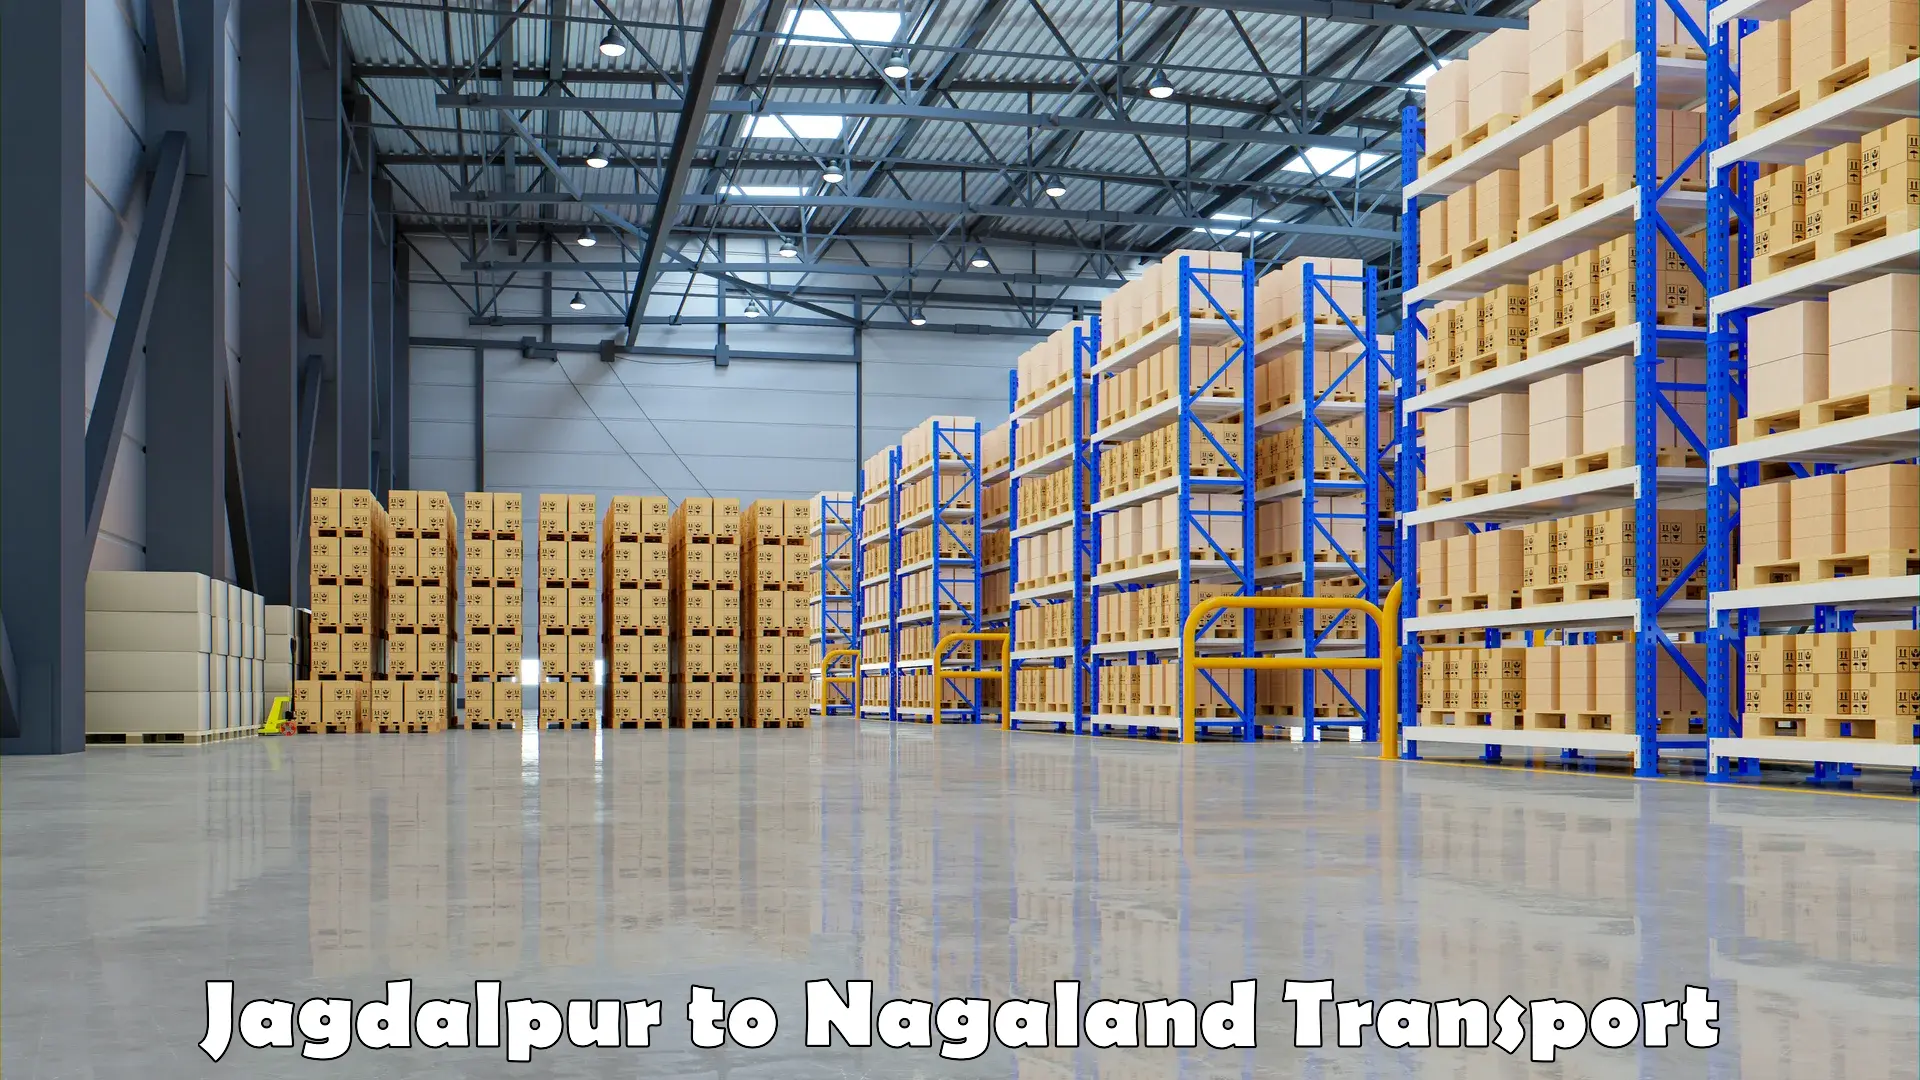 Commercial transport service Jagdalpur to NIT Nagaland